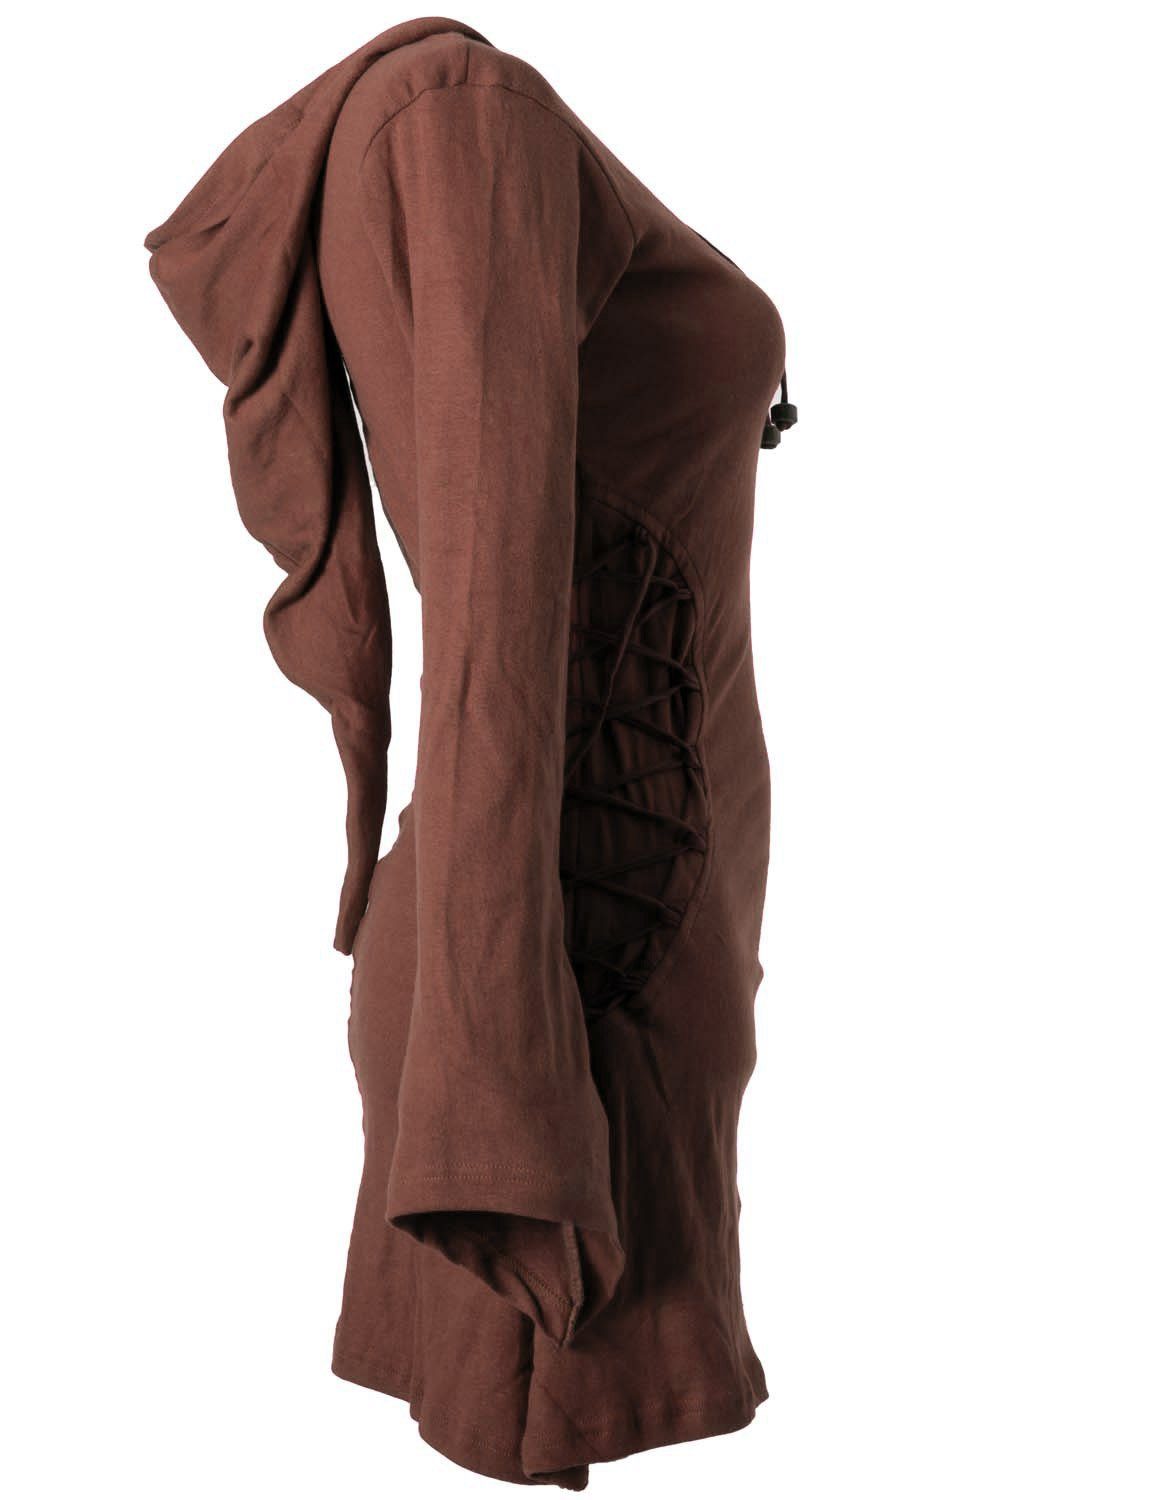 Vishes Zipfelkleid Elfenkleid mit Zipfelkapuze Bändern dunkelbraun Style Schnüren Gothik zum Ethno, Hoody